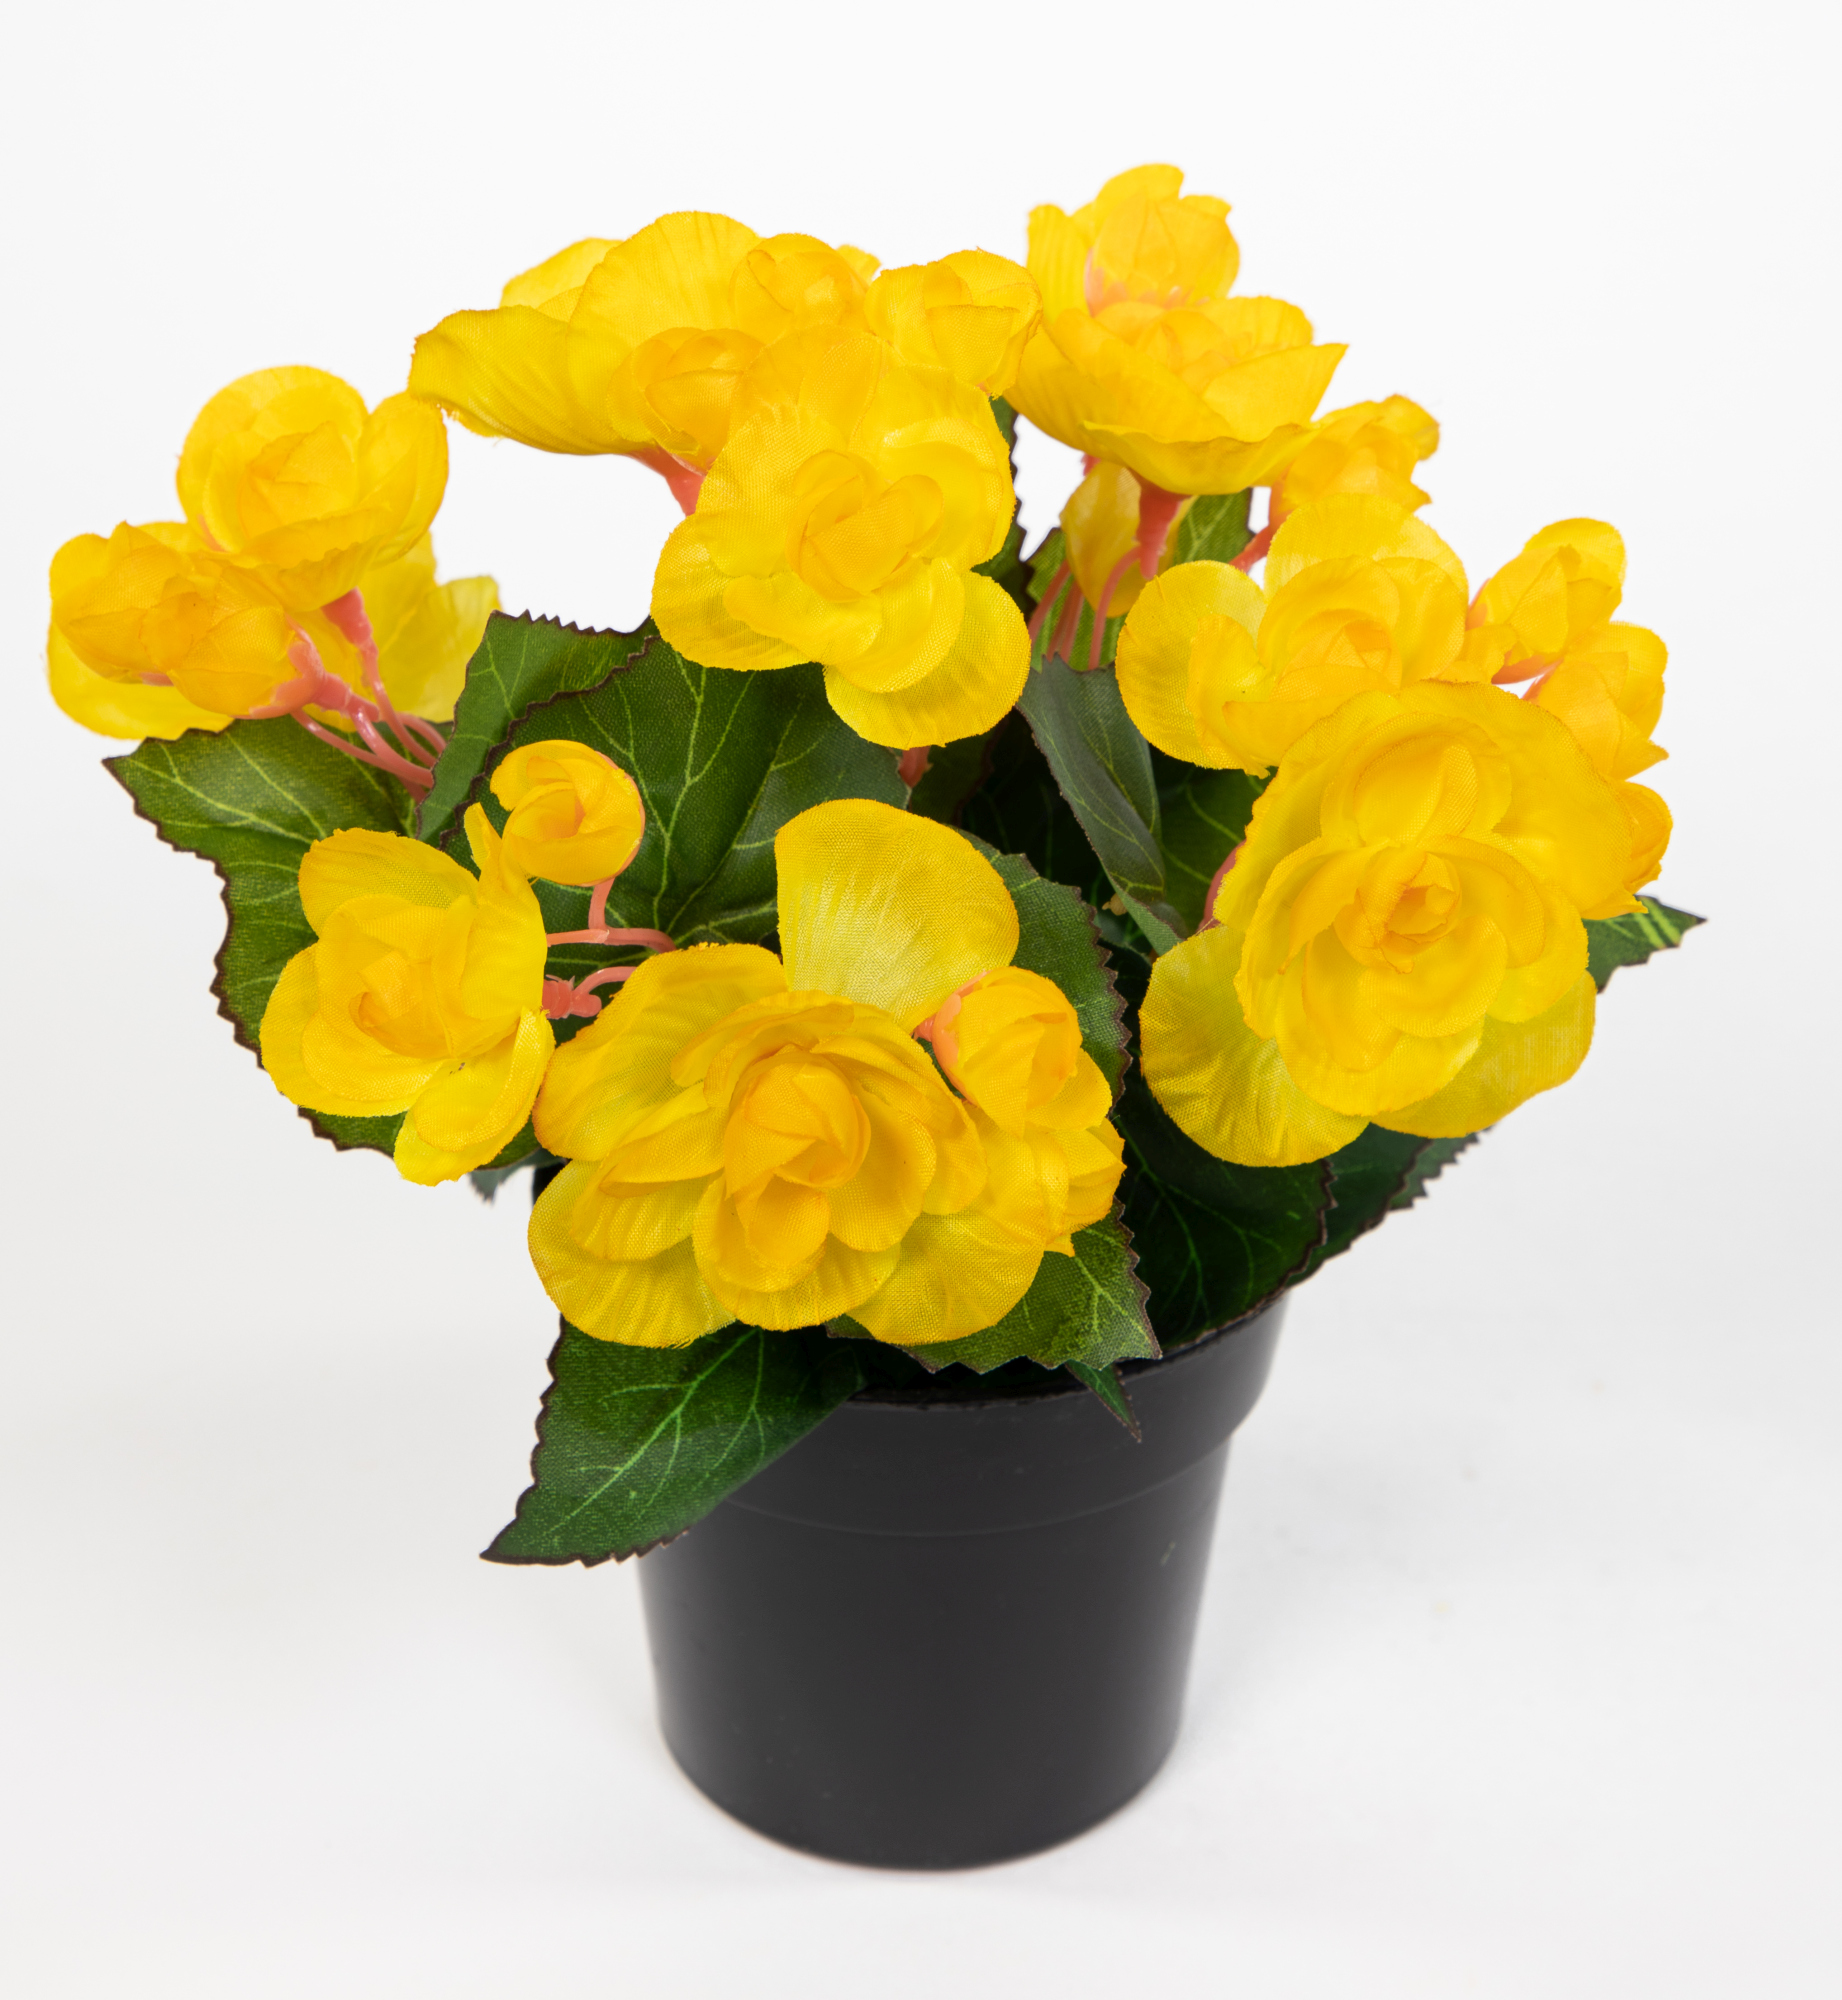 Begonie 20cm gelb im Topf JA Kunstpflanzen Begonienbusch künstliche Blumen Pflanzen Kunstblumen